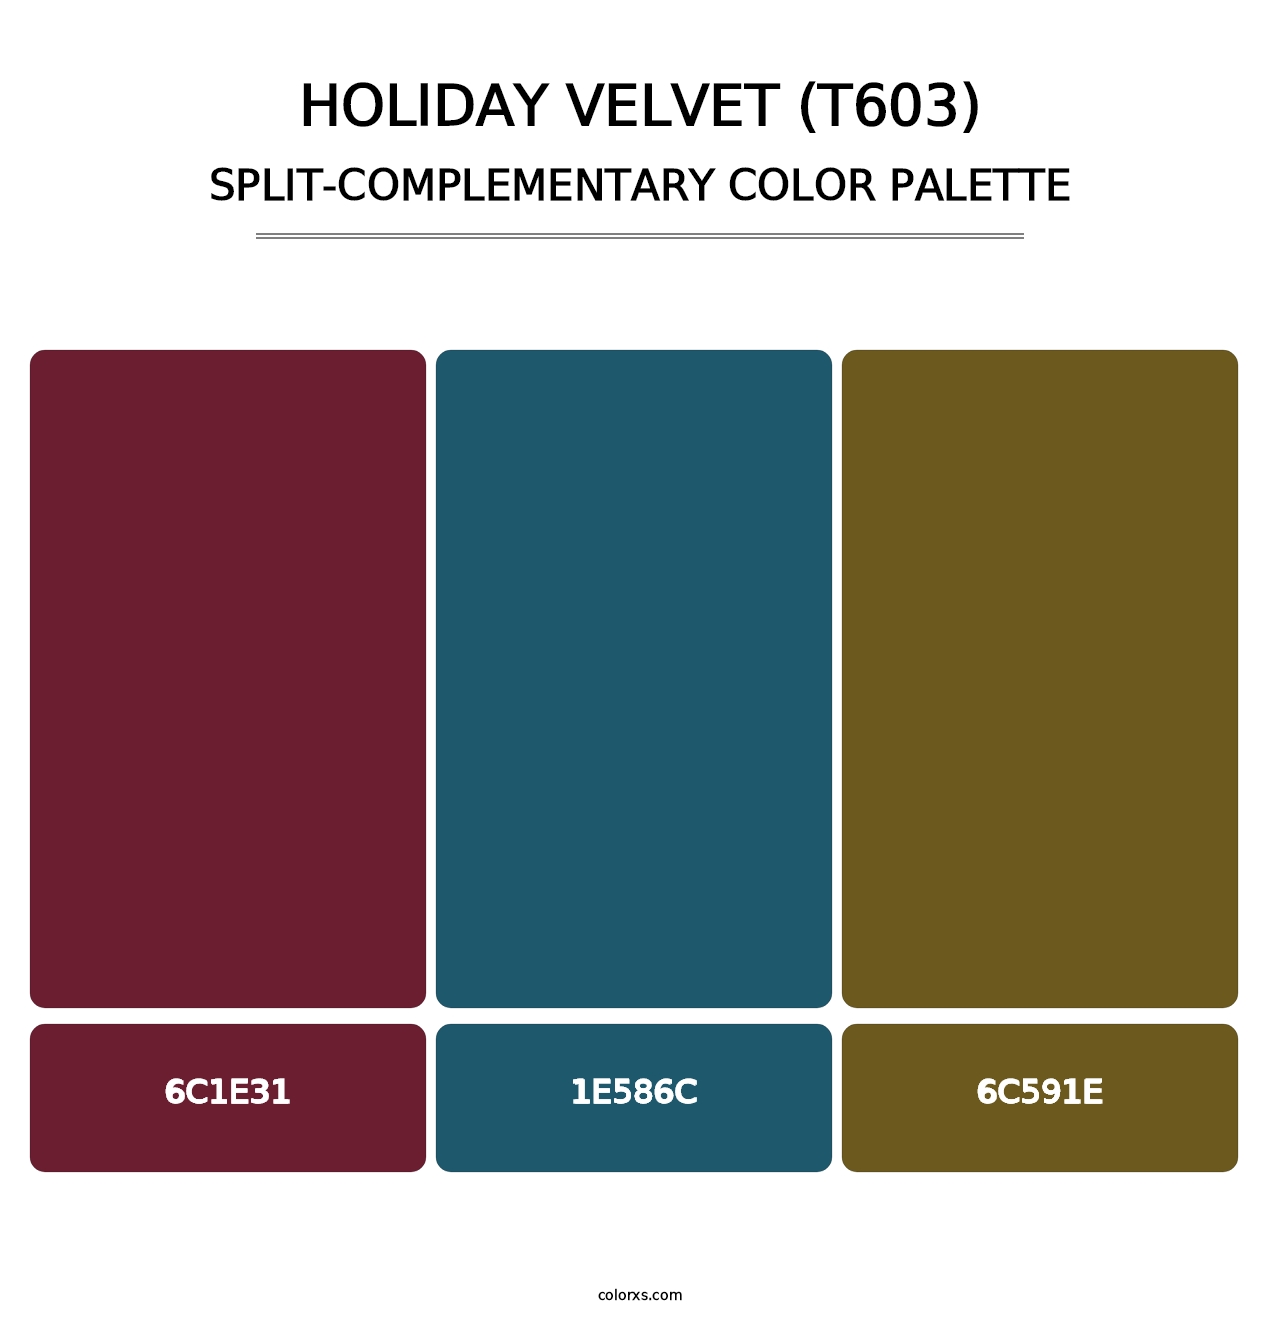 Holiday Velvet (T603) - Split-Complementary Color Palette